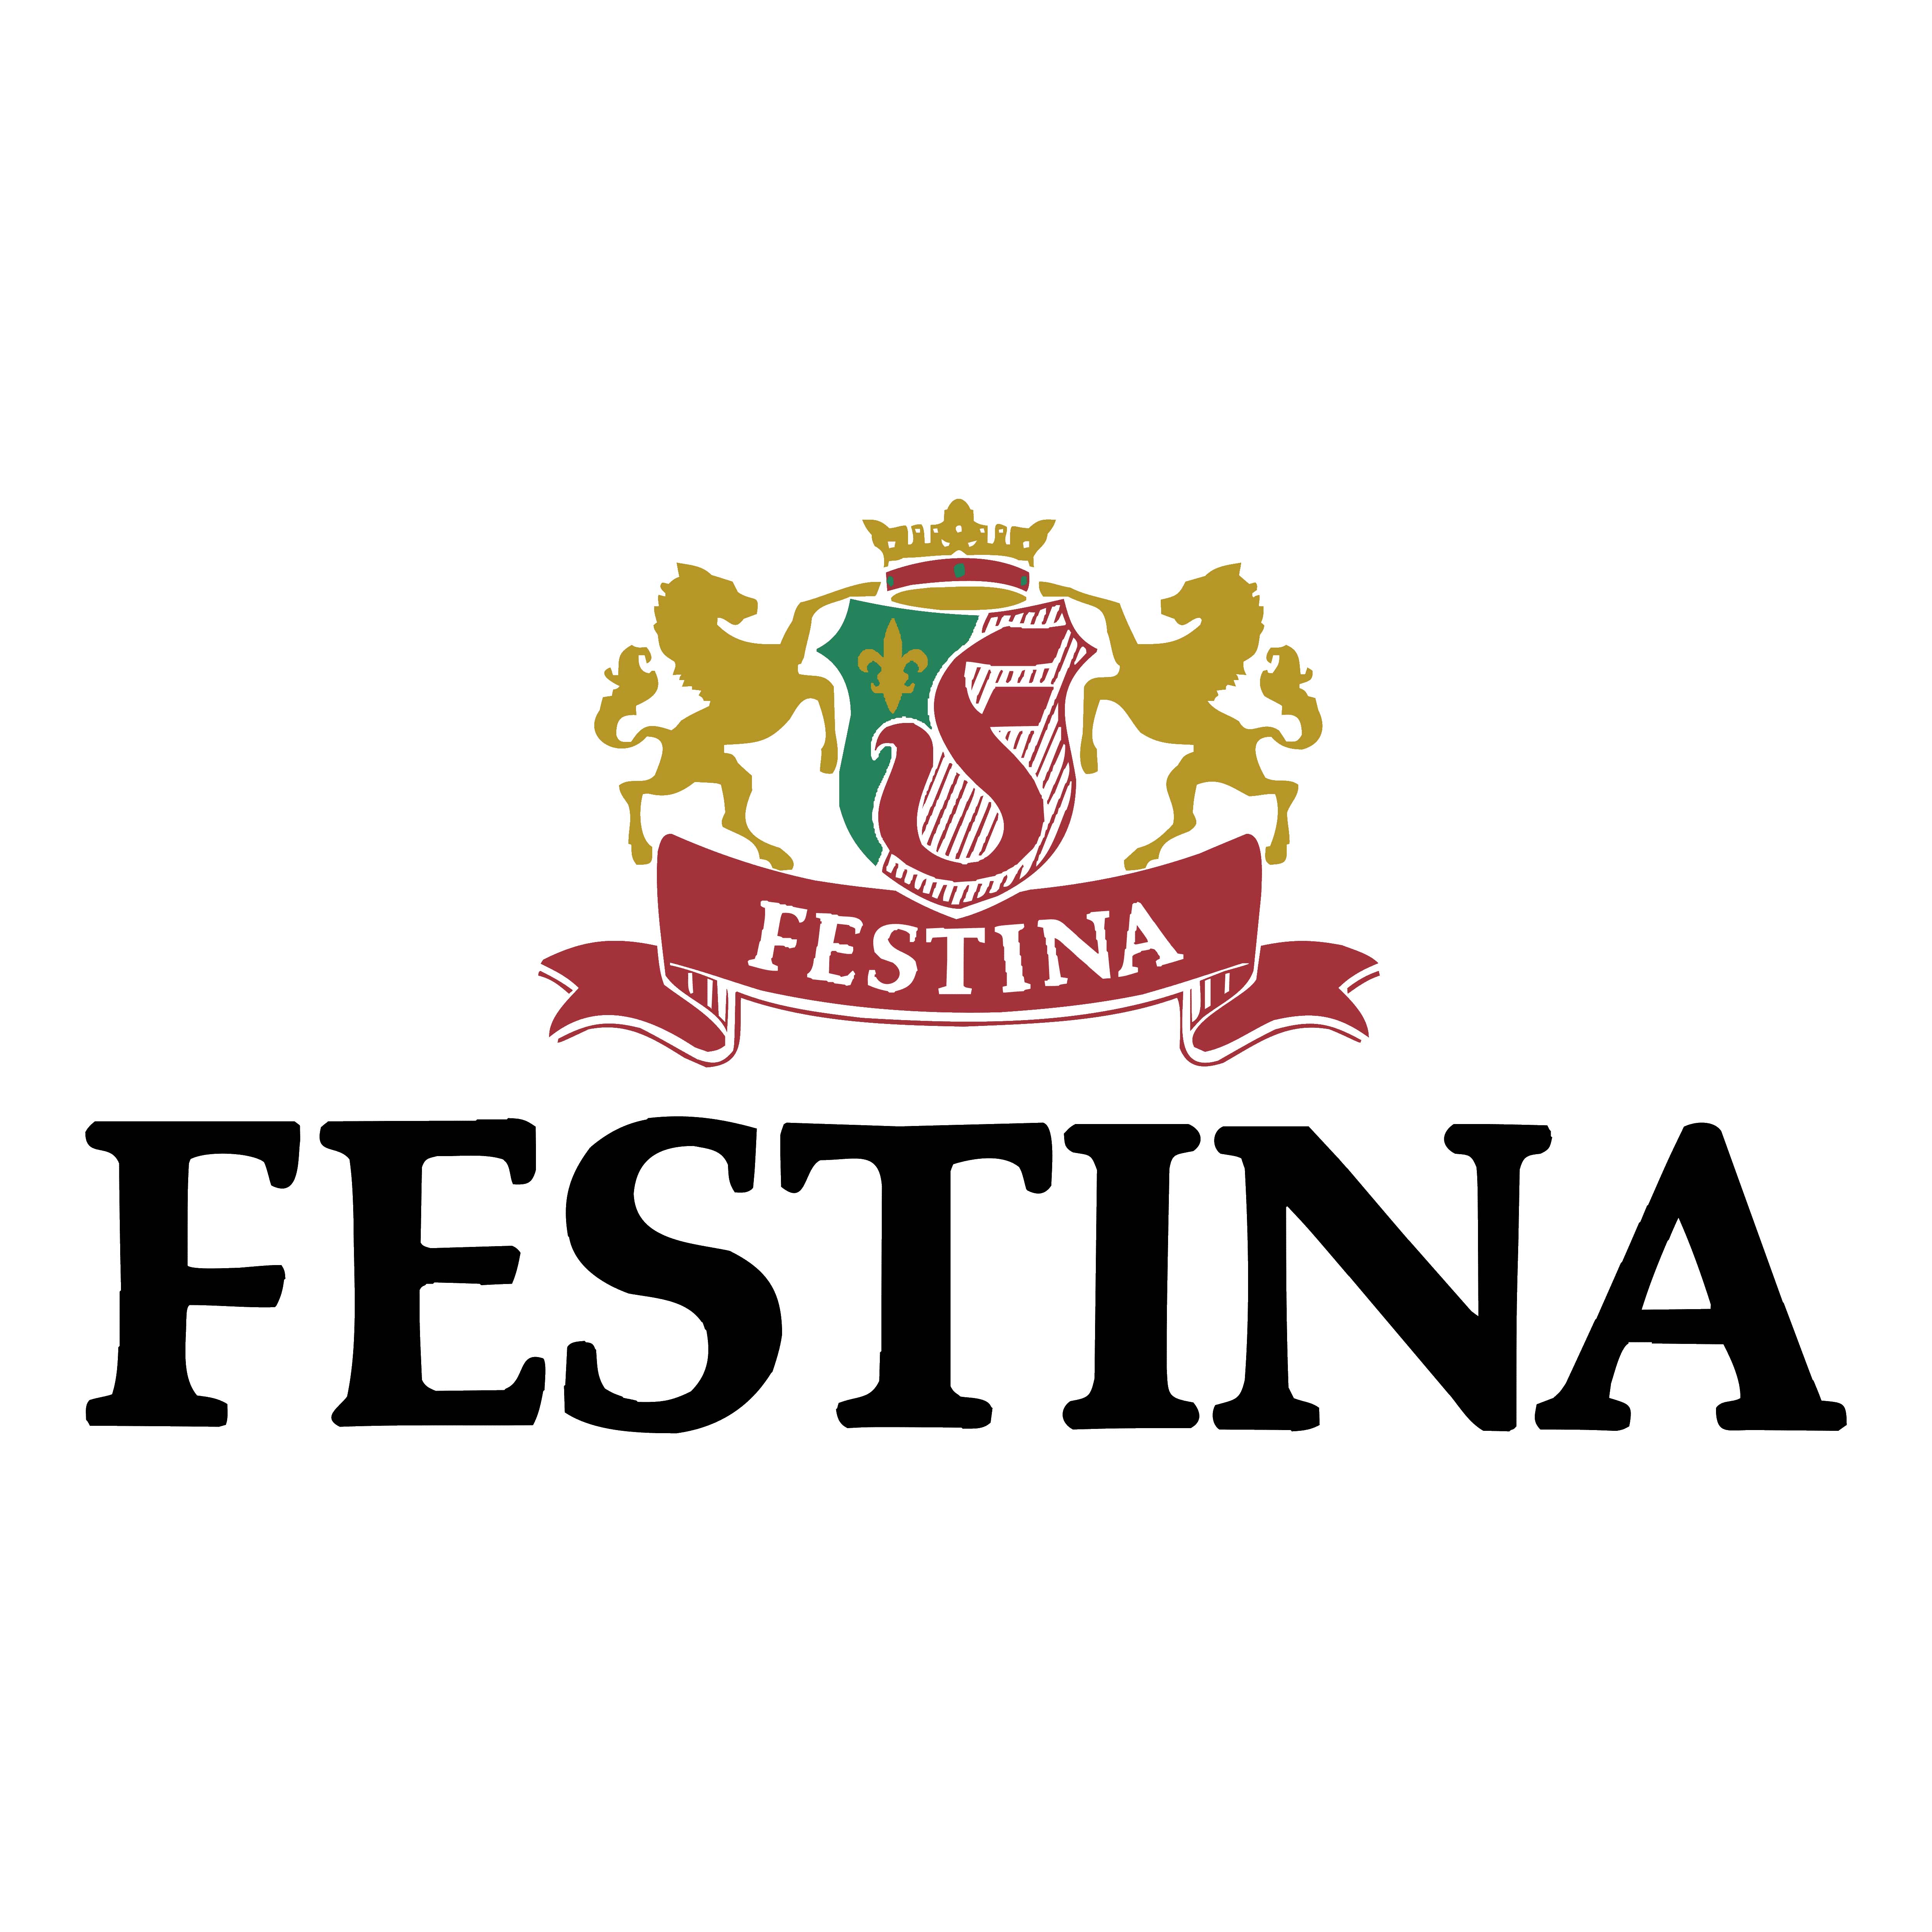 Mẫu thiết kế logo thương hiệu công ty FESTINA